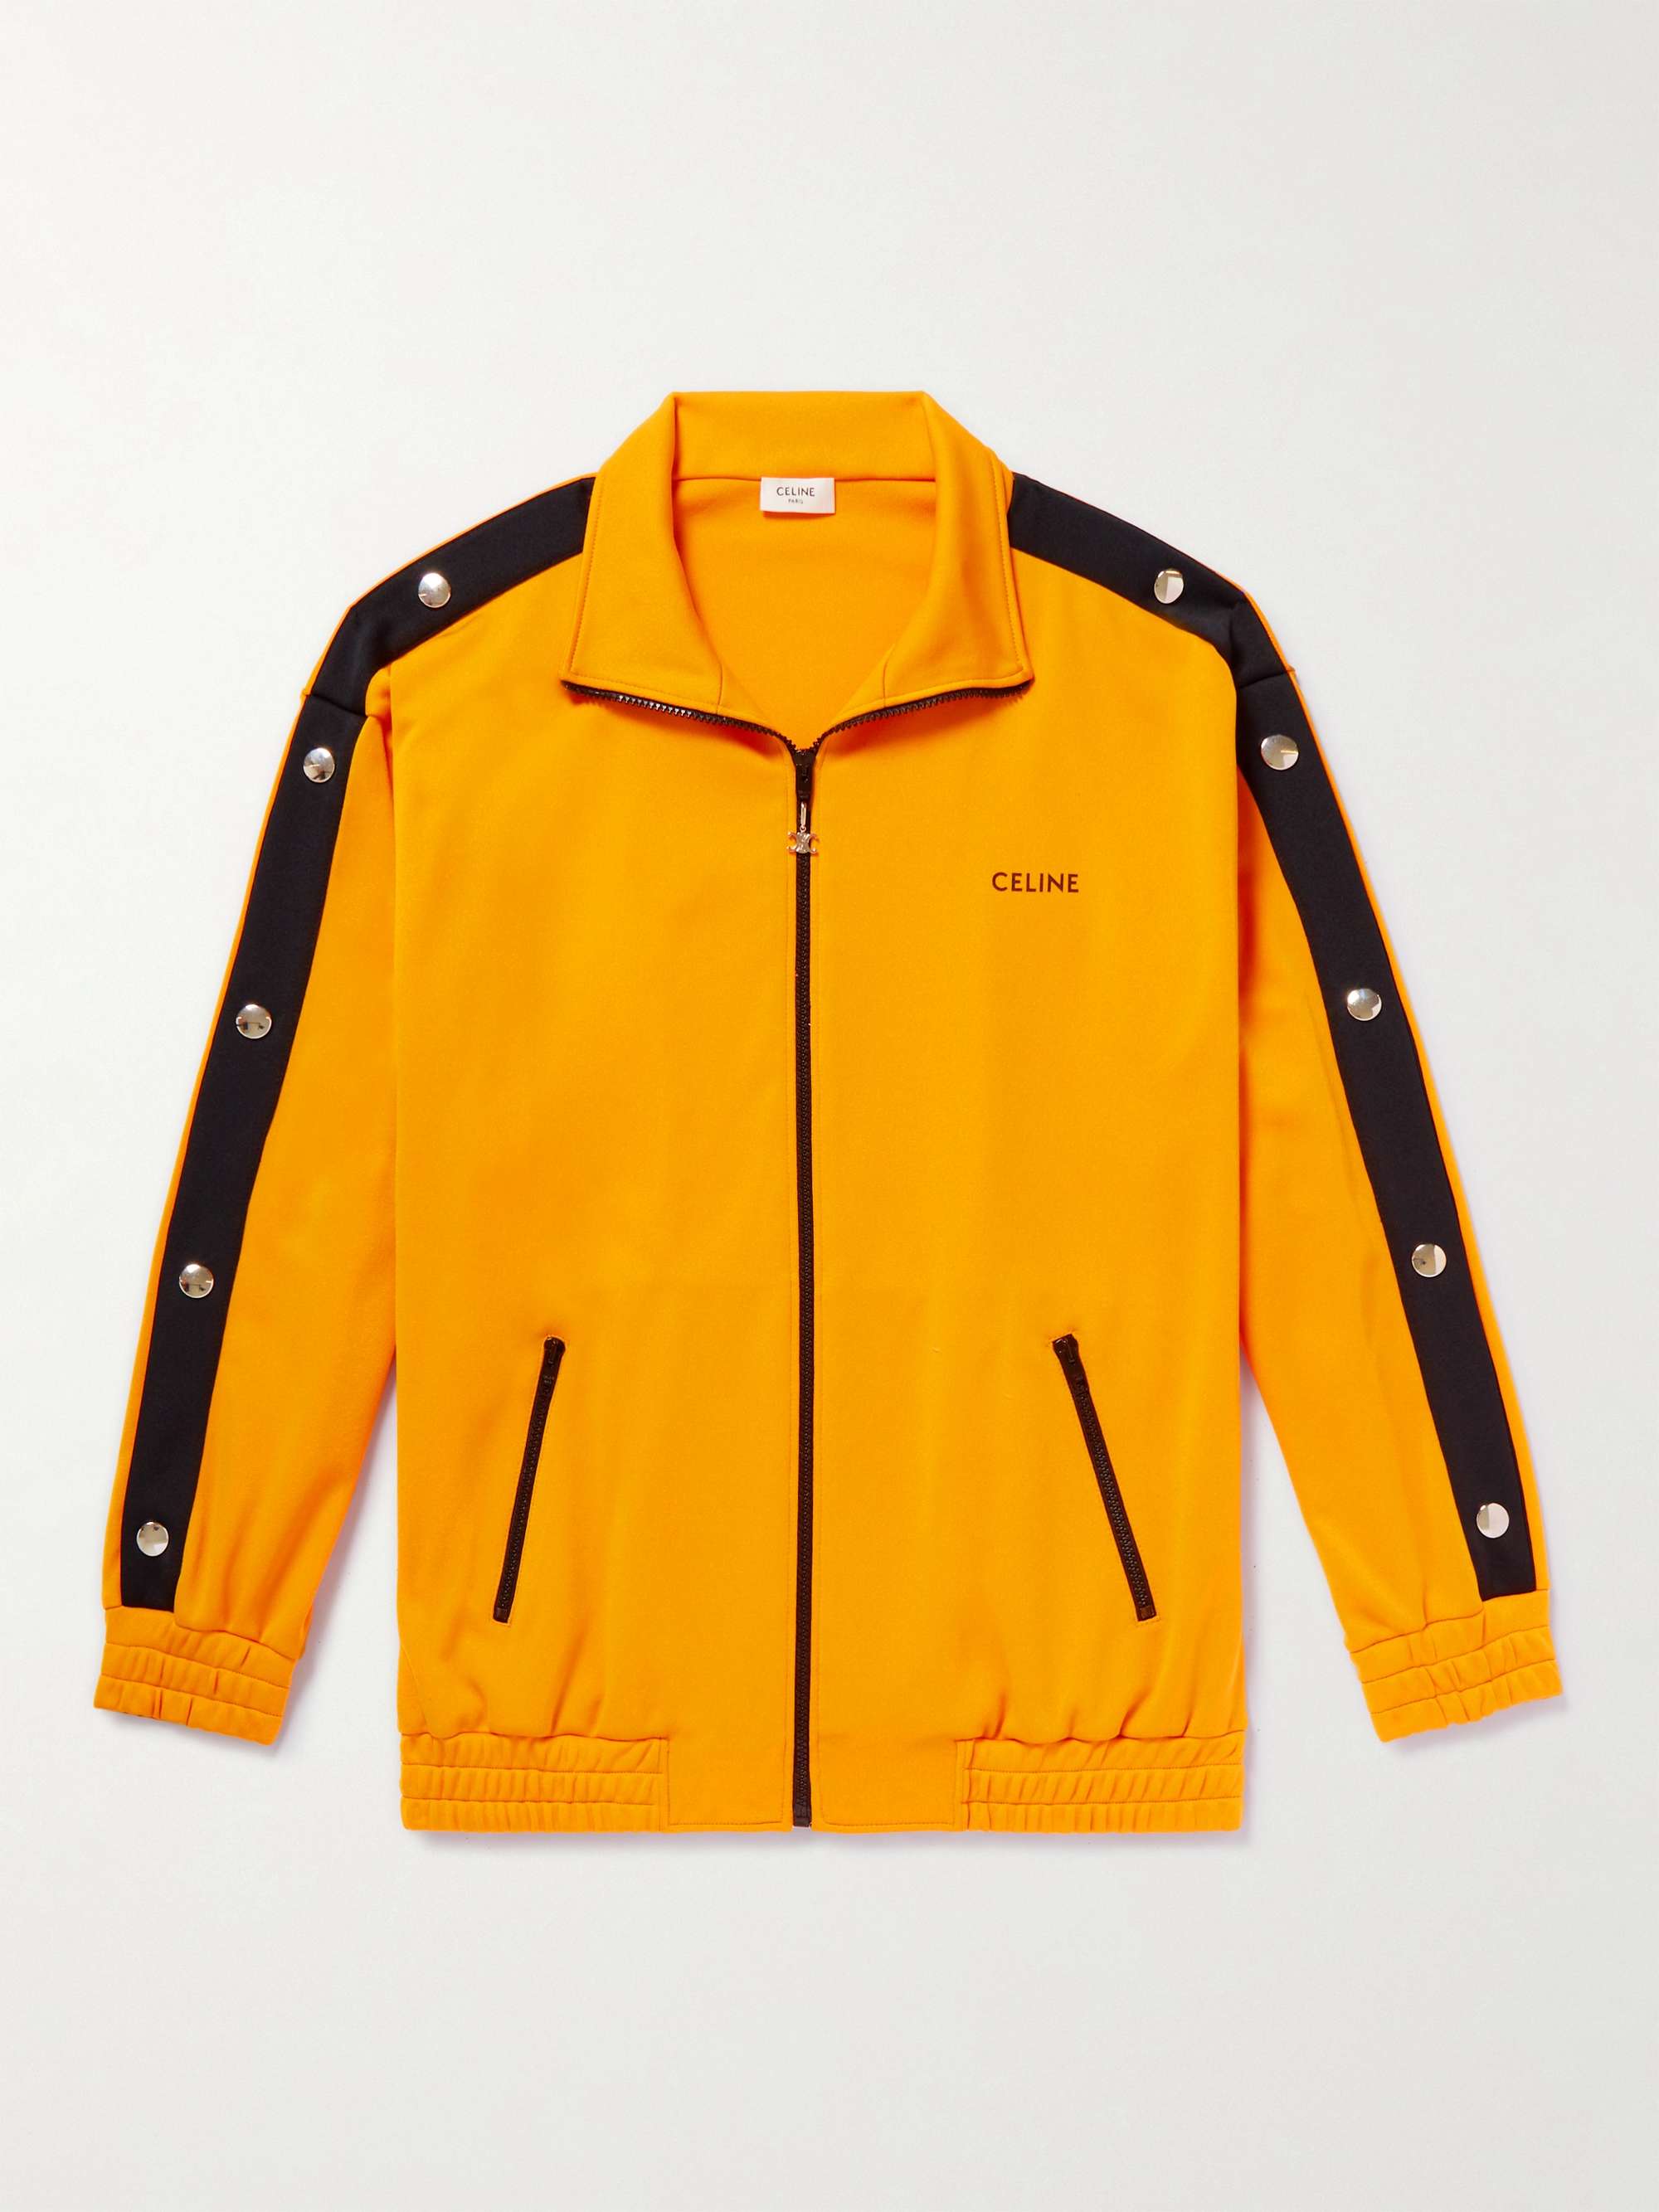 CELINE HOMME Studded Jersey Zip-Up Track Jacket